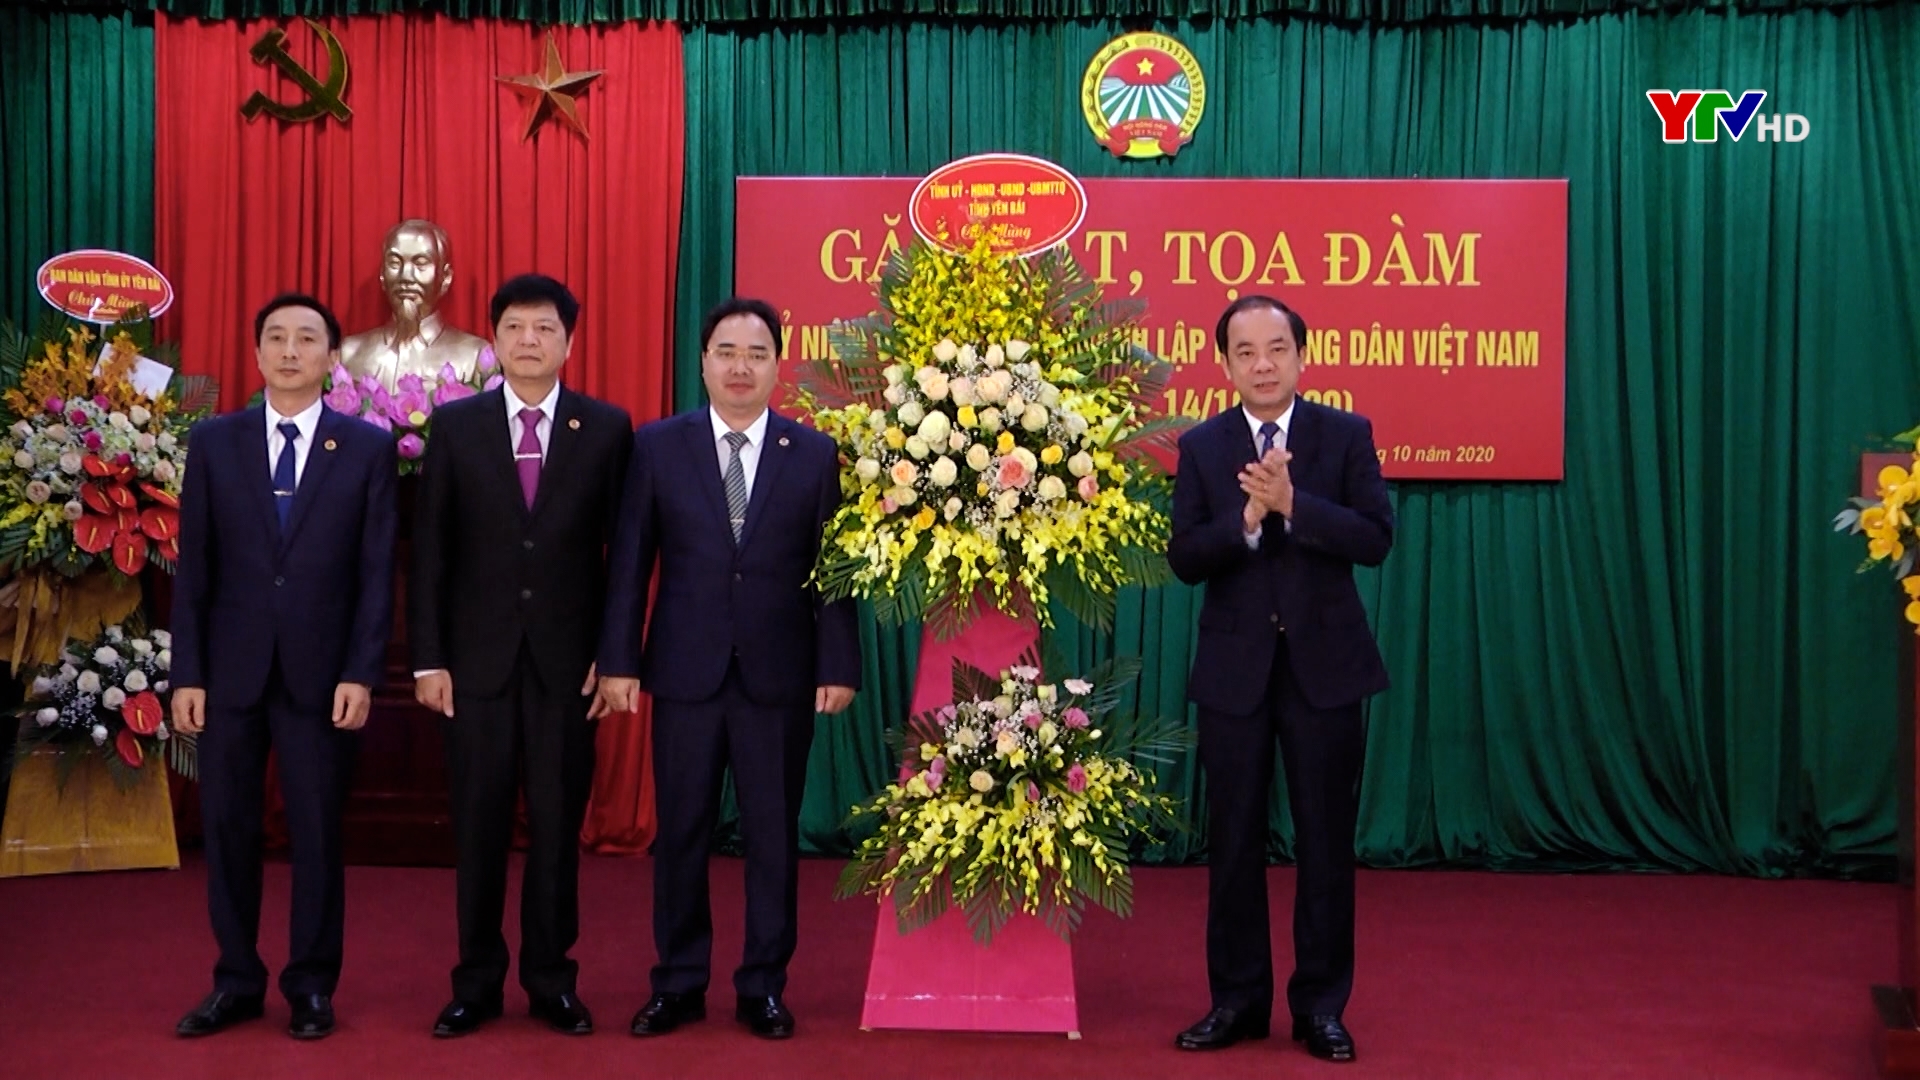 Hội Nông dân Yên Bái tổ chức gặp mặt, tọa đàm kỷ niệm 90 năm Ngày thành lập Hội Nông dân Việt Nam